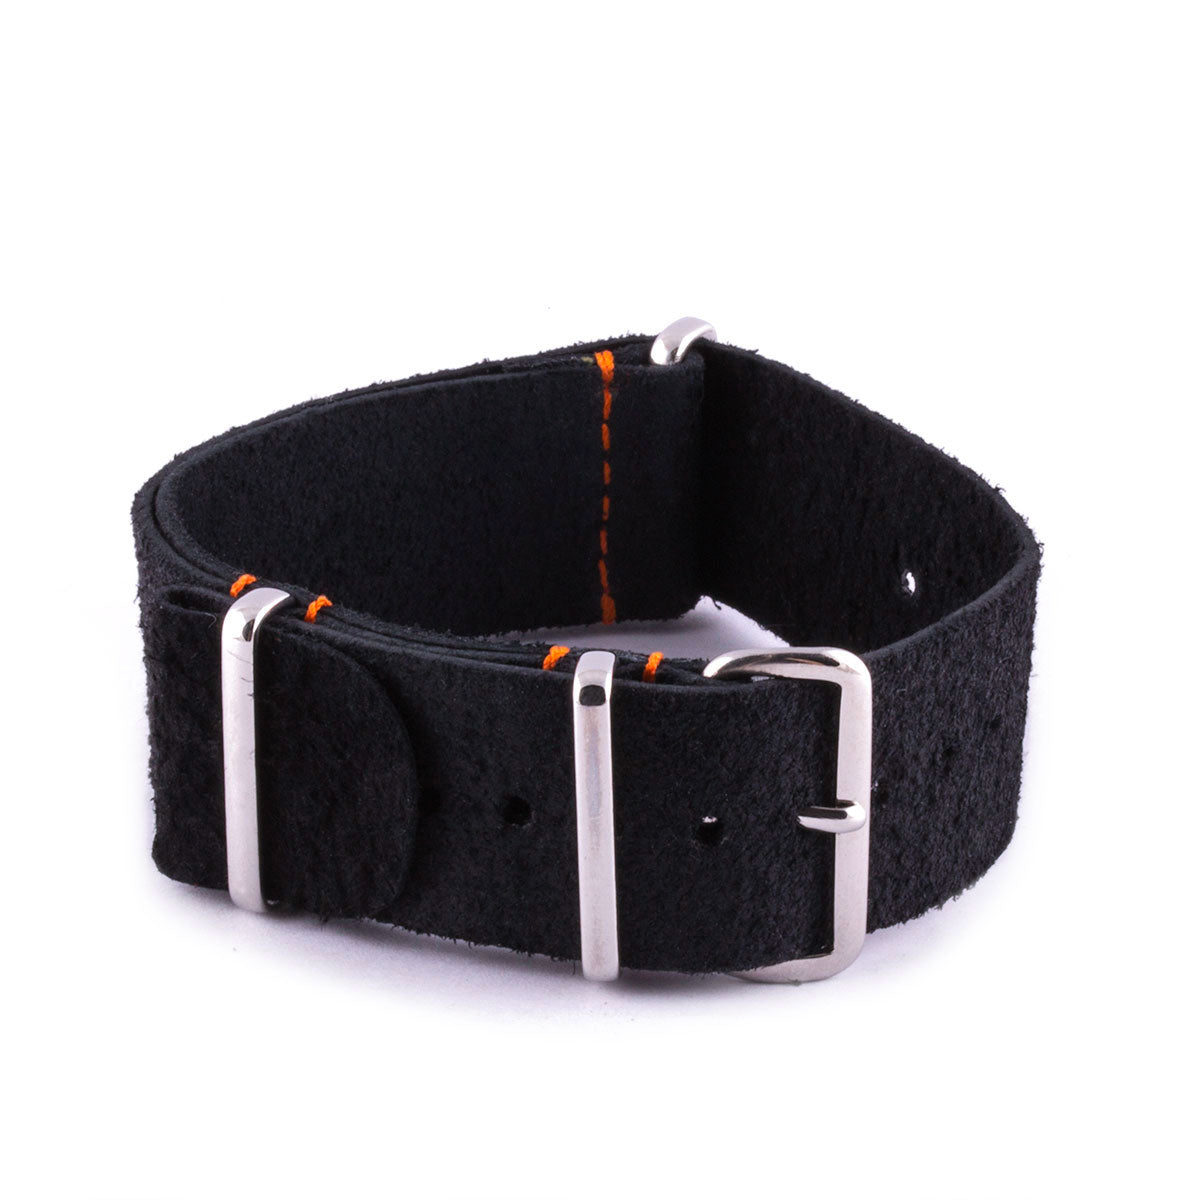 Breitling Chronomat - Bracelet de montre nato - Veau noir - watch band leather strap - ABP Concept -